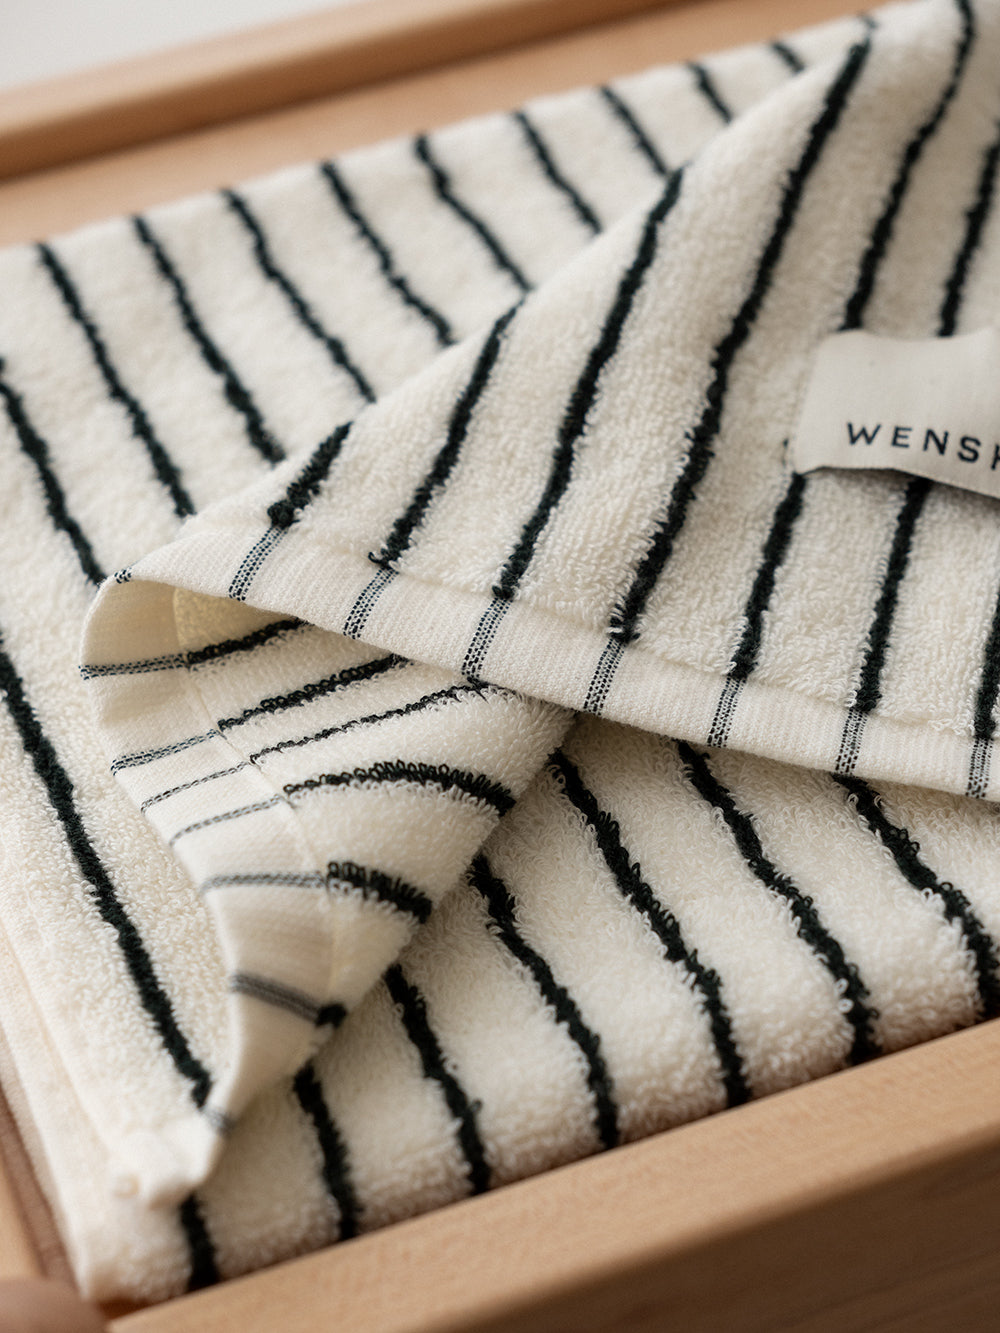 Black&white striped pure cotton bath towel